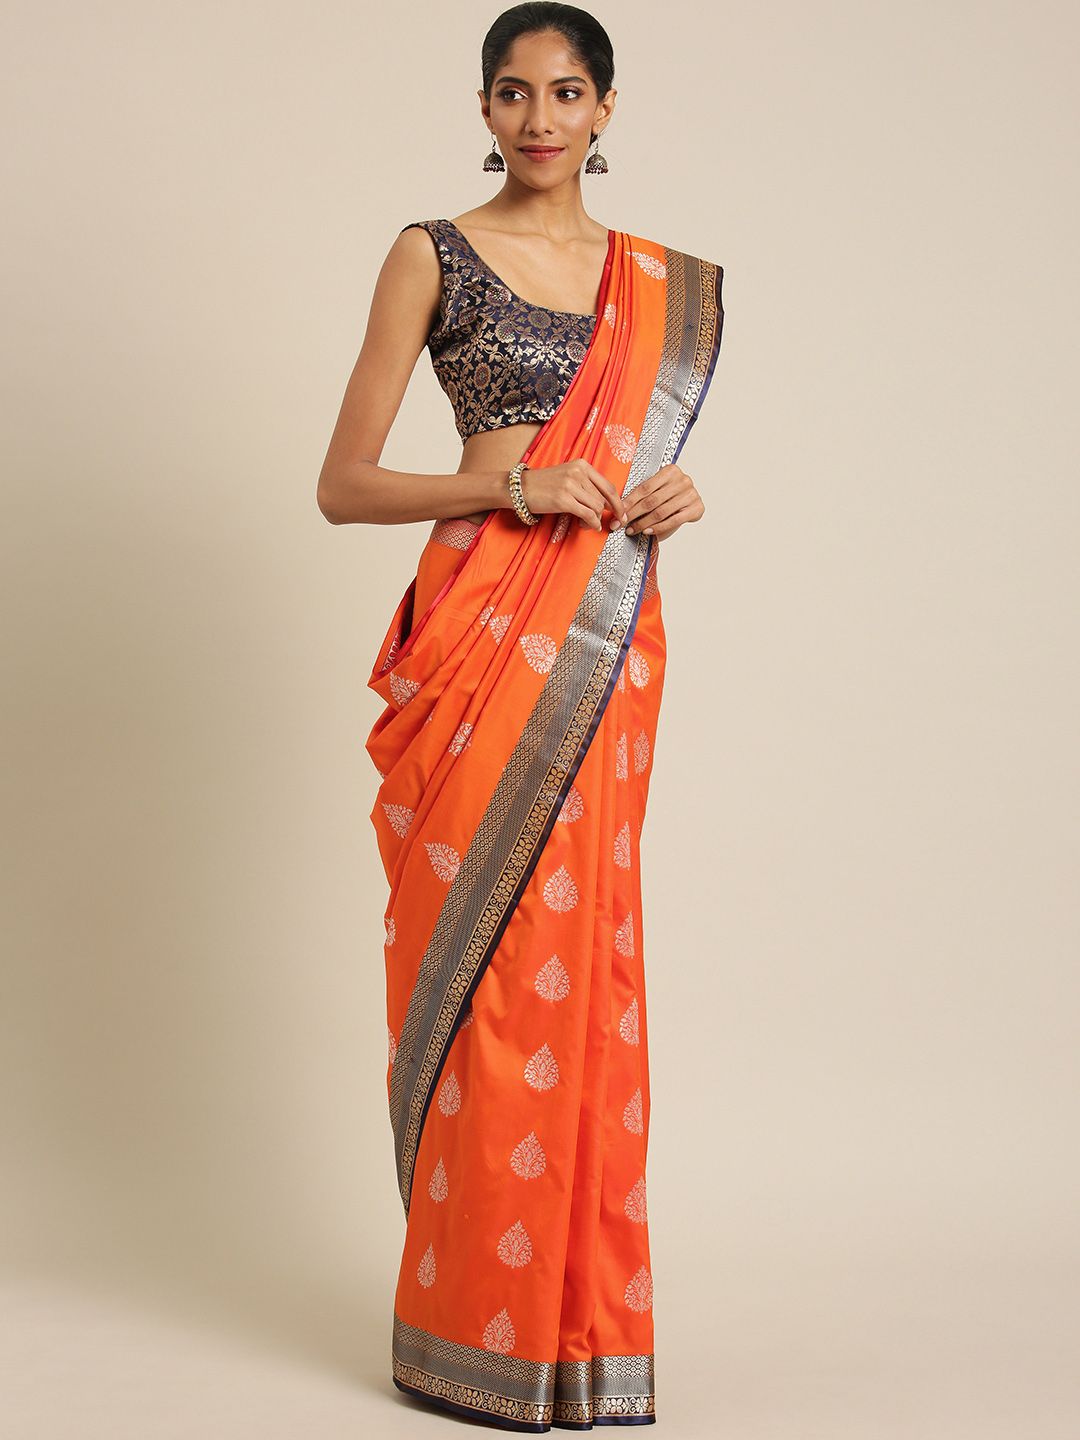 Varkala Silk Sarees Orange & Navy Blue Woven Design Banarasi Saree Price in India